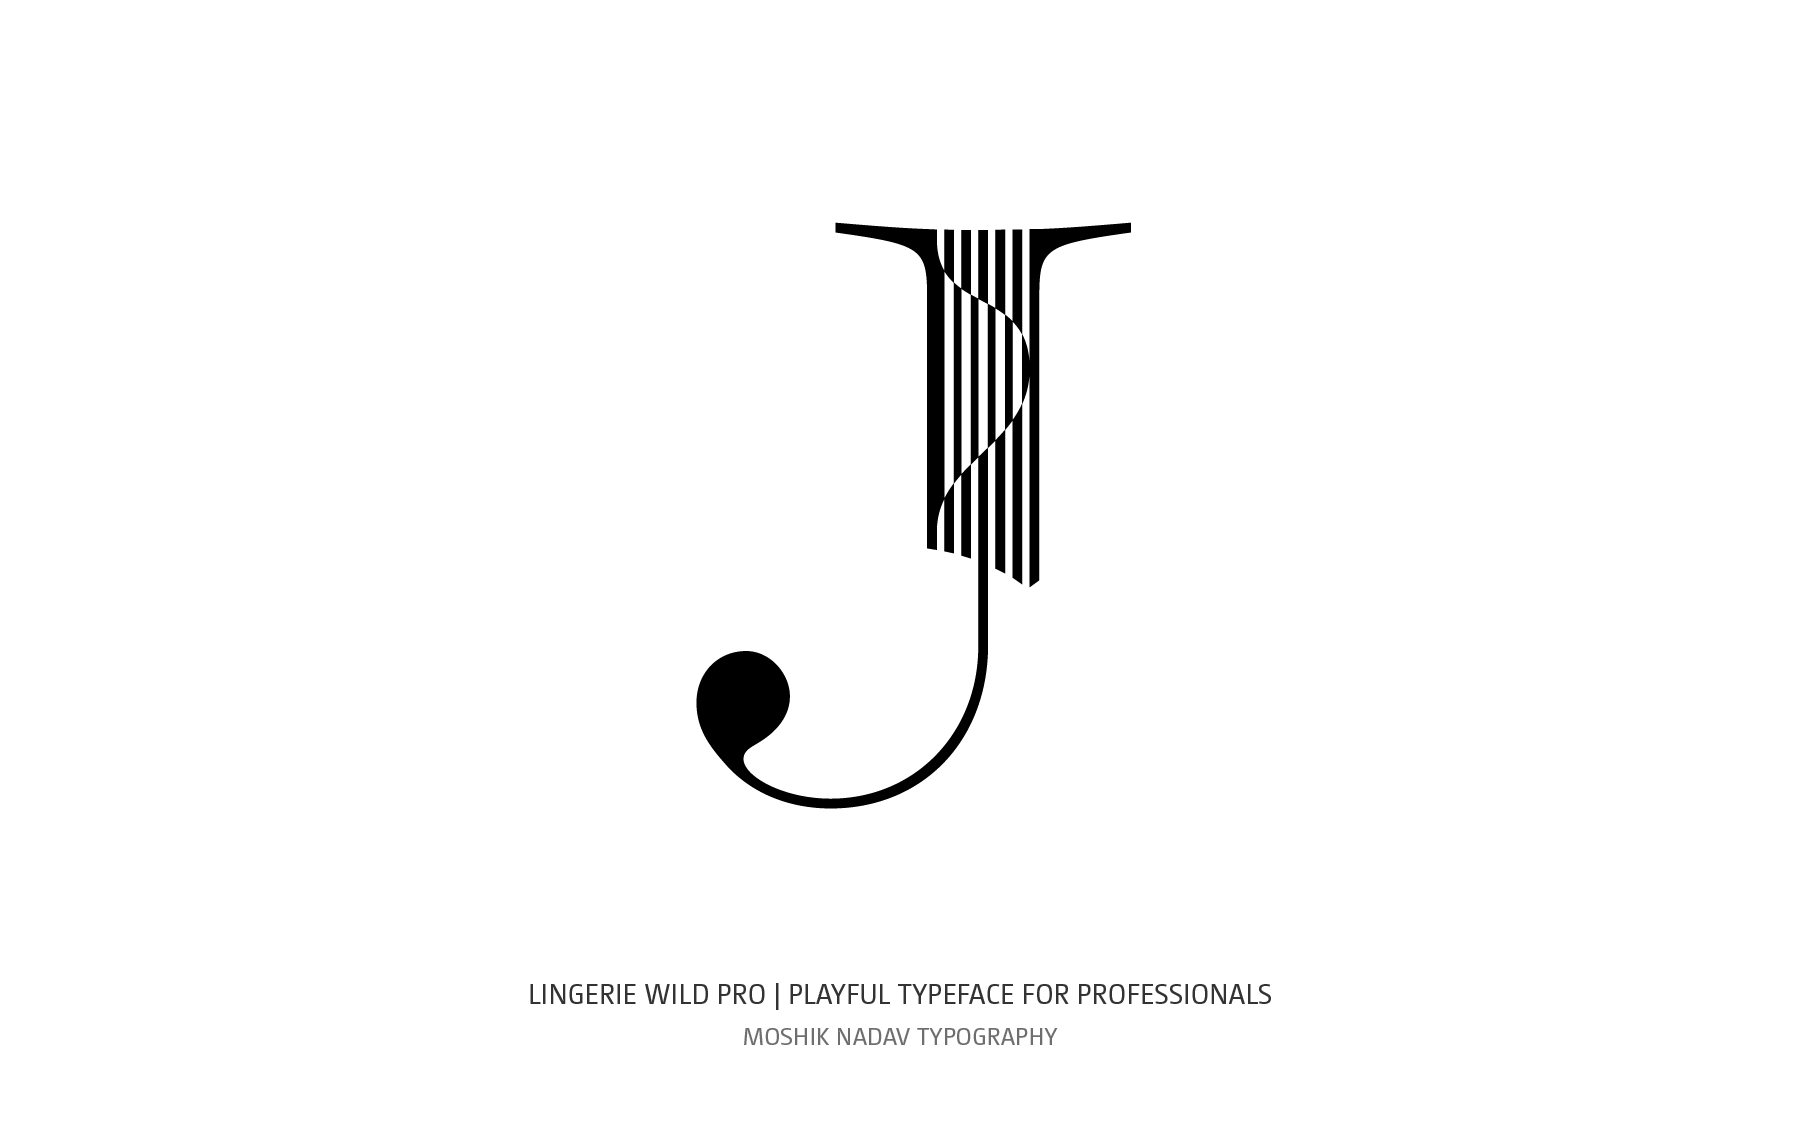 super sexy uppercase J designed by Moshik Nadav Typography NYC